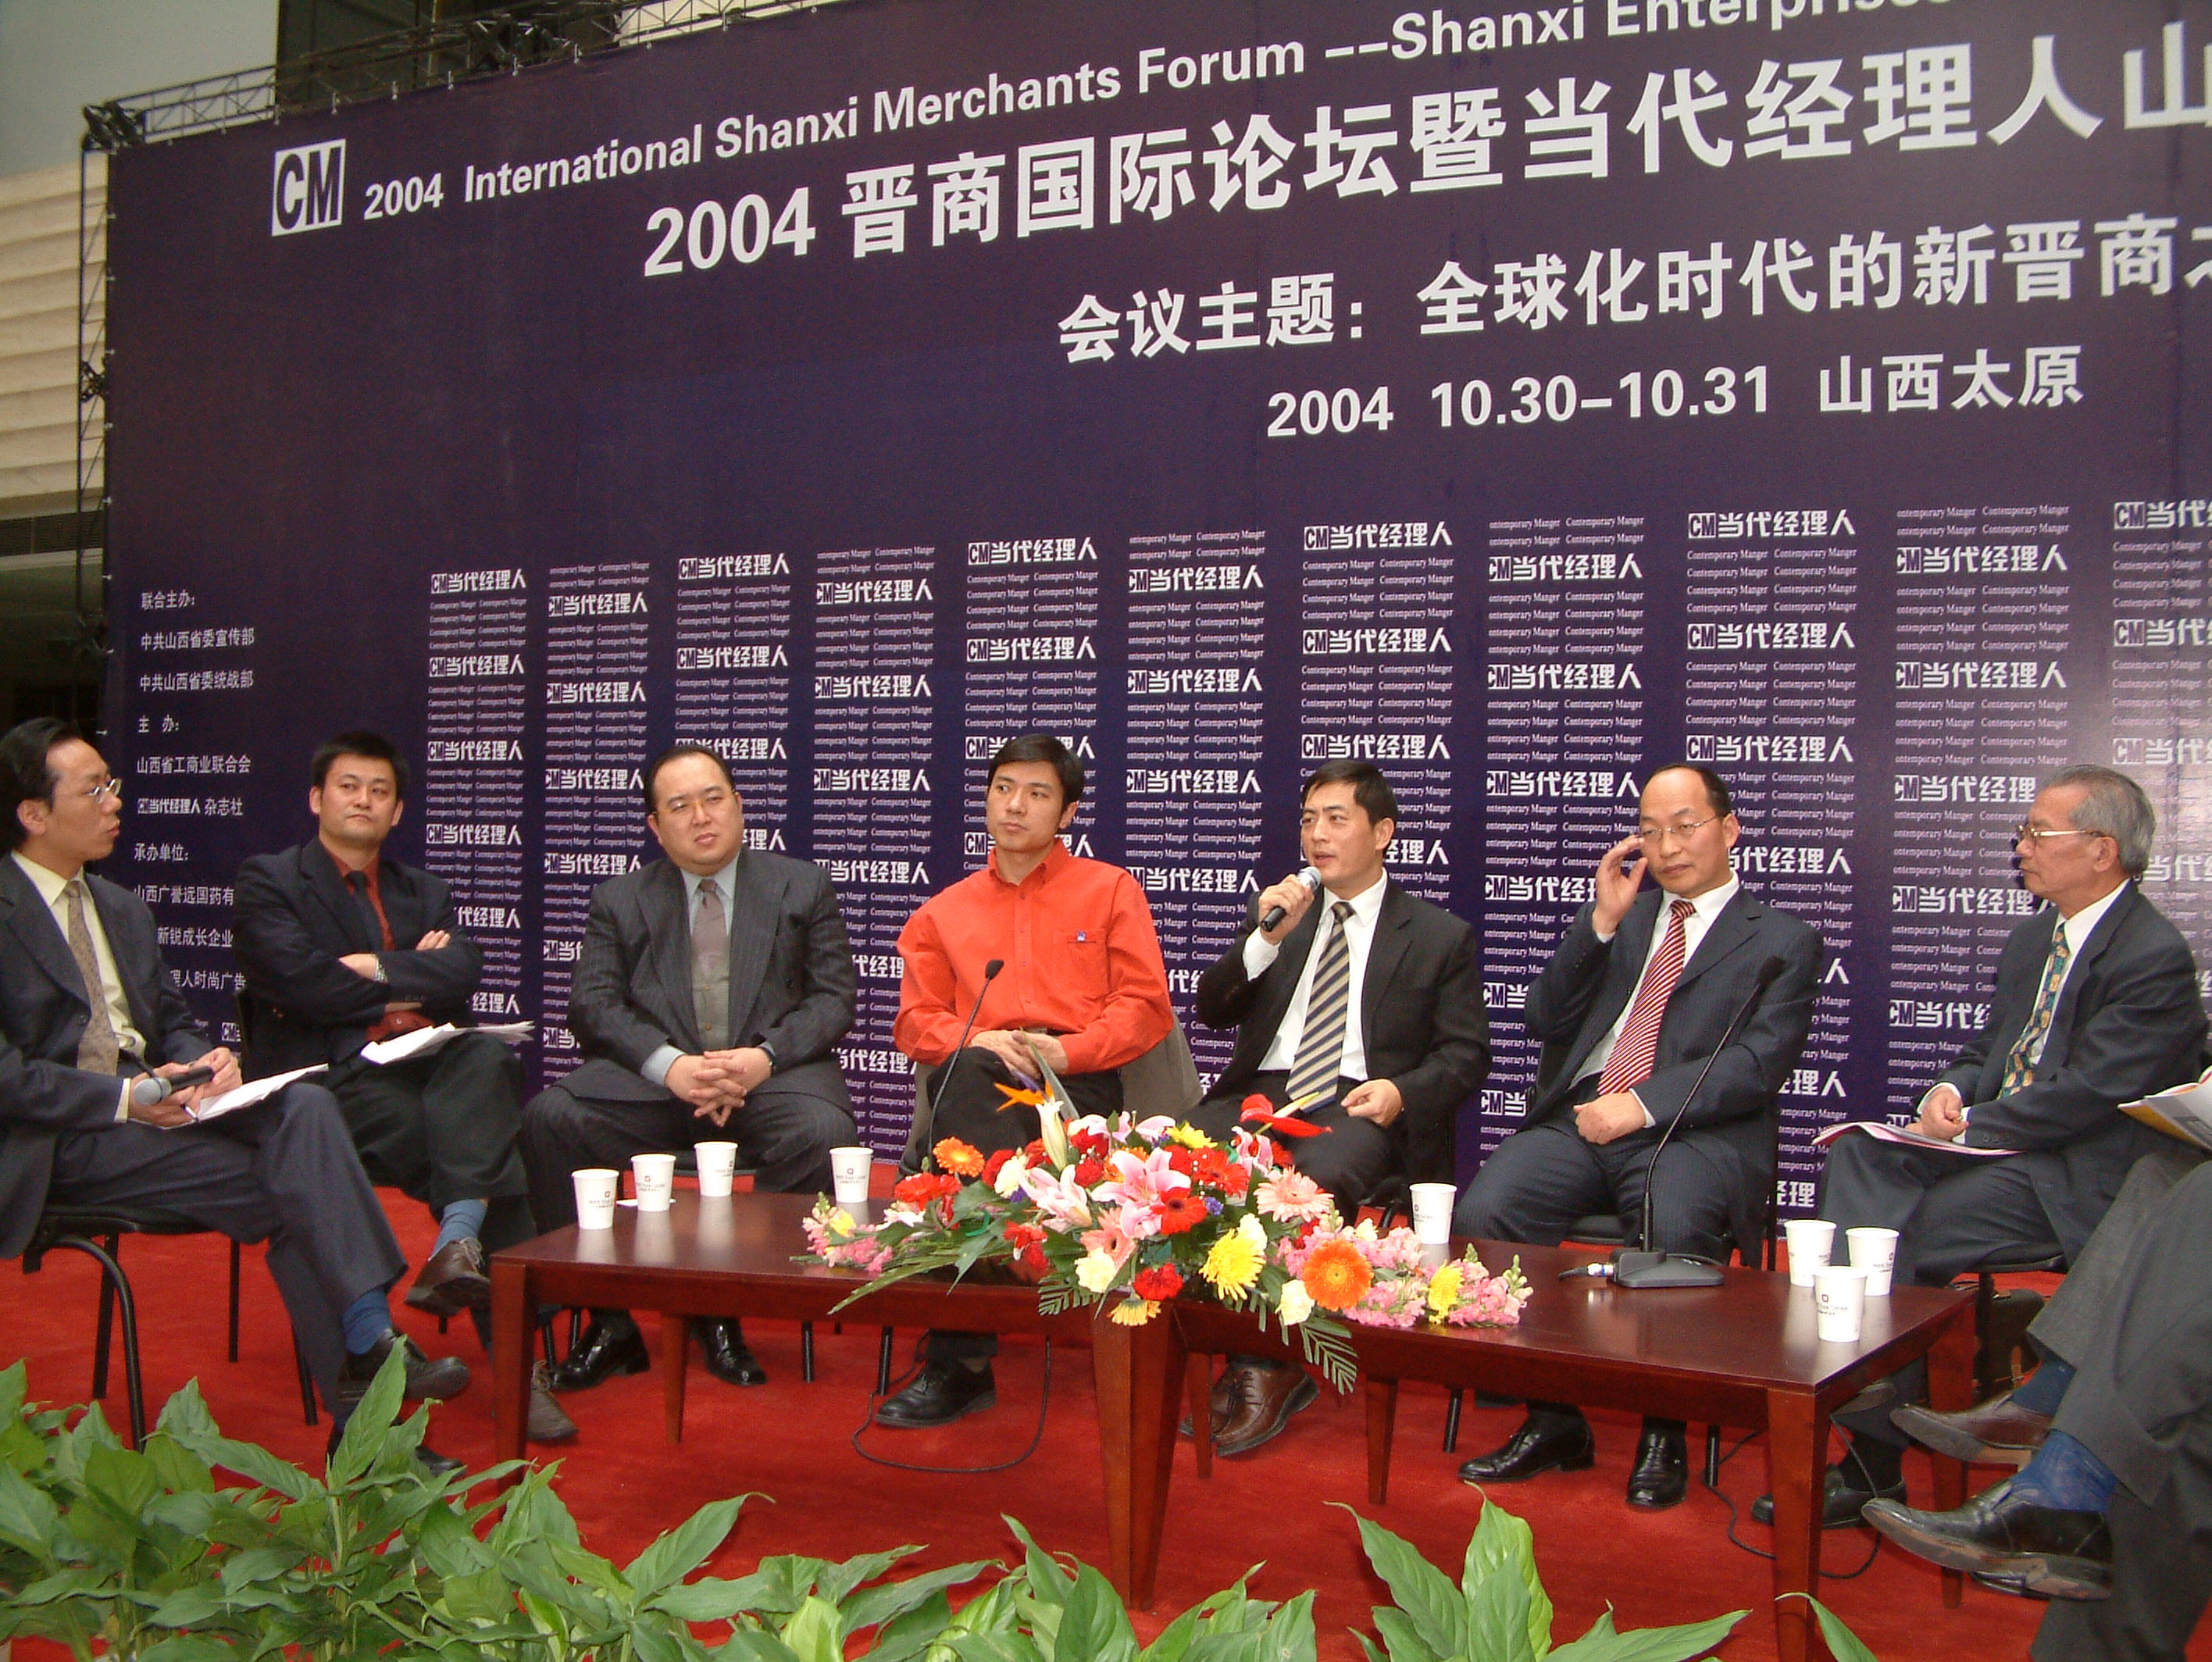 President Bin Chen attends the 2004 International Merchants’ Forum